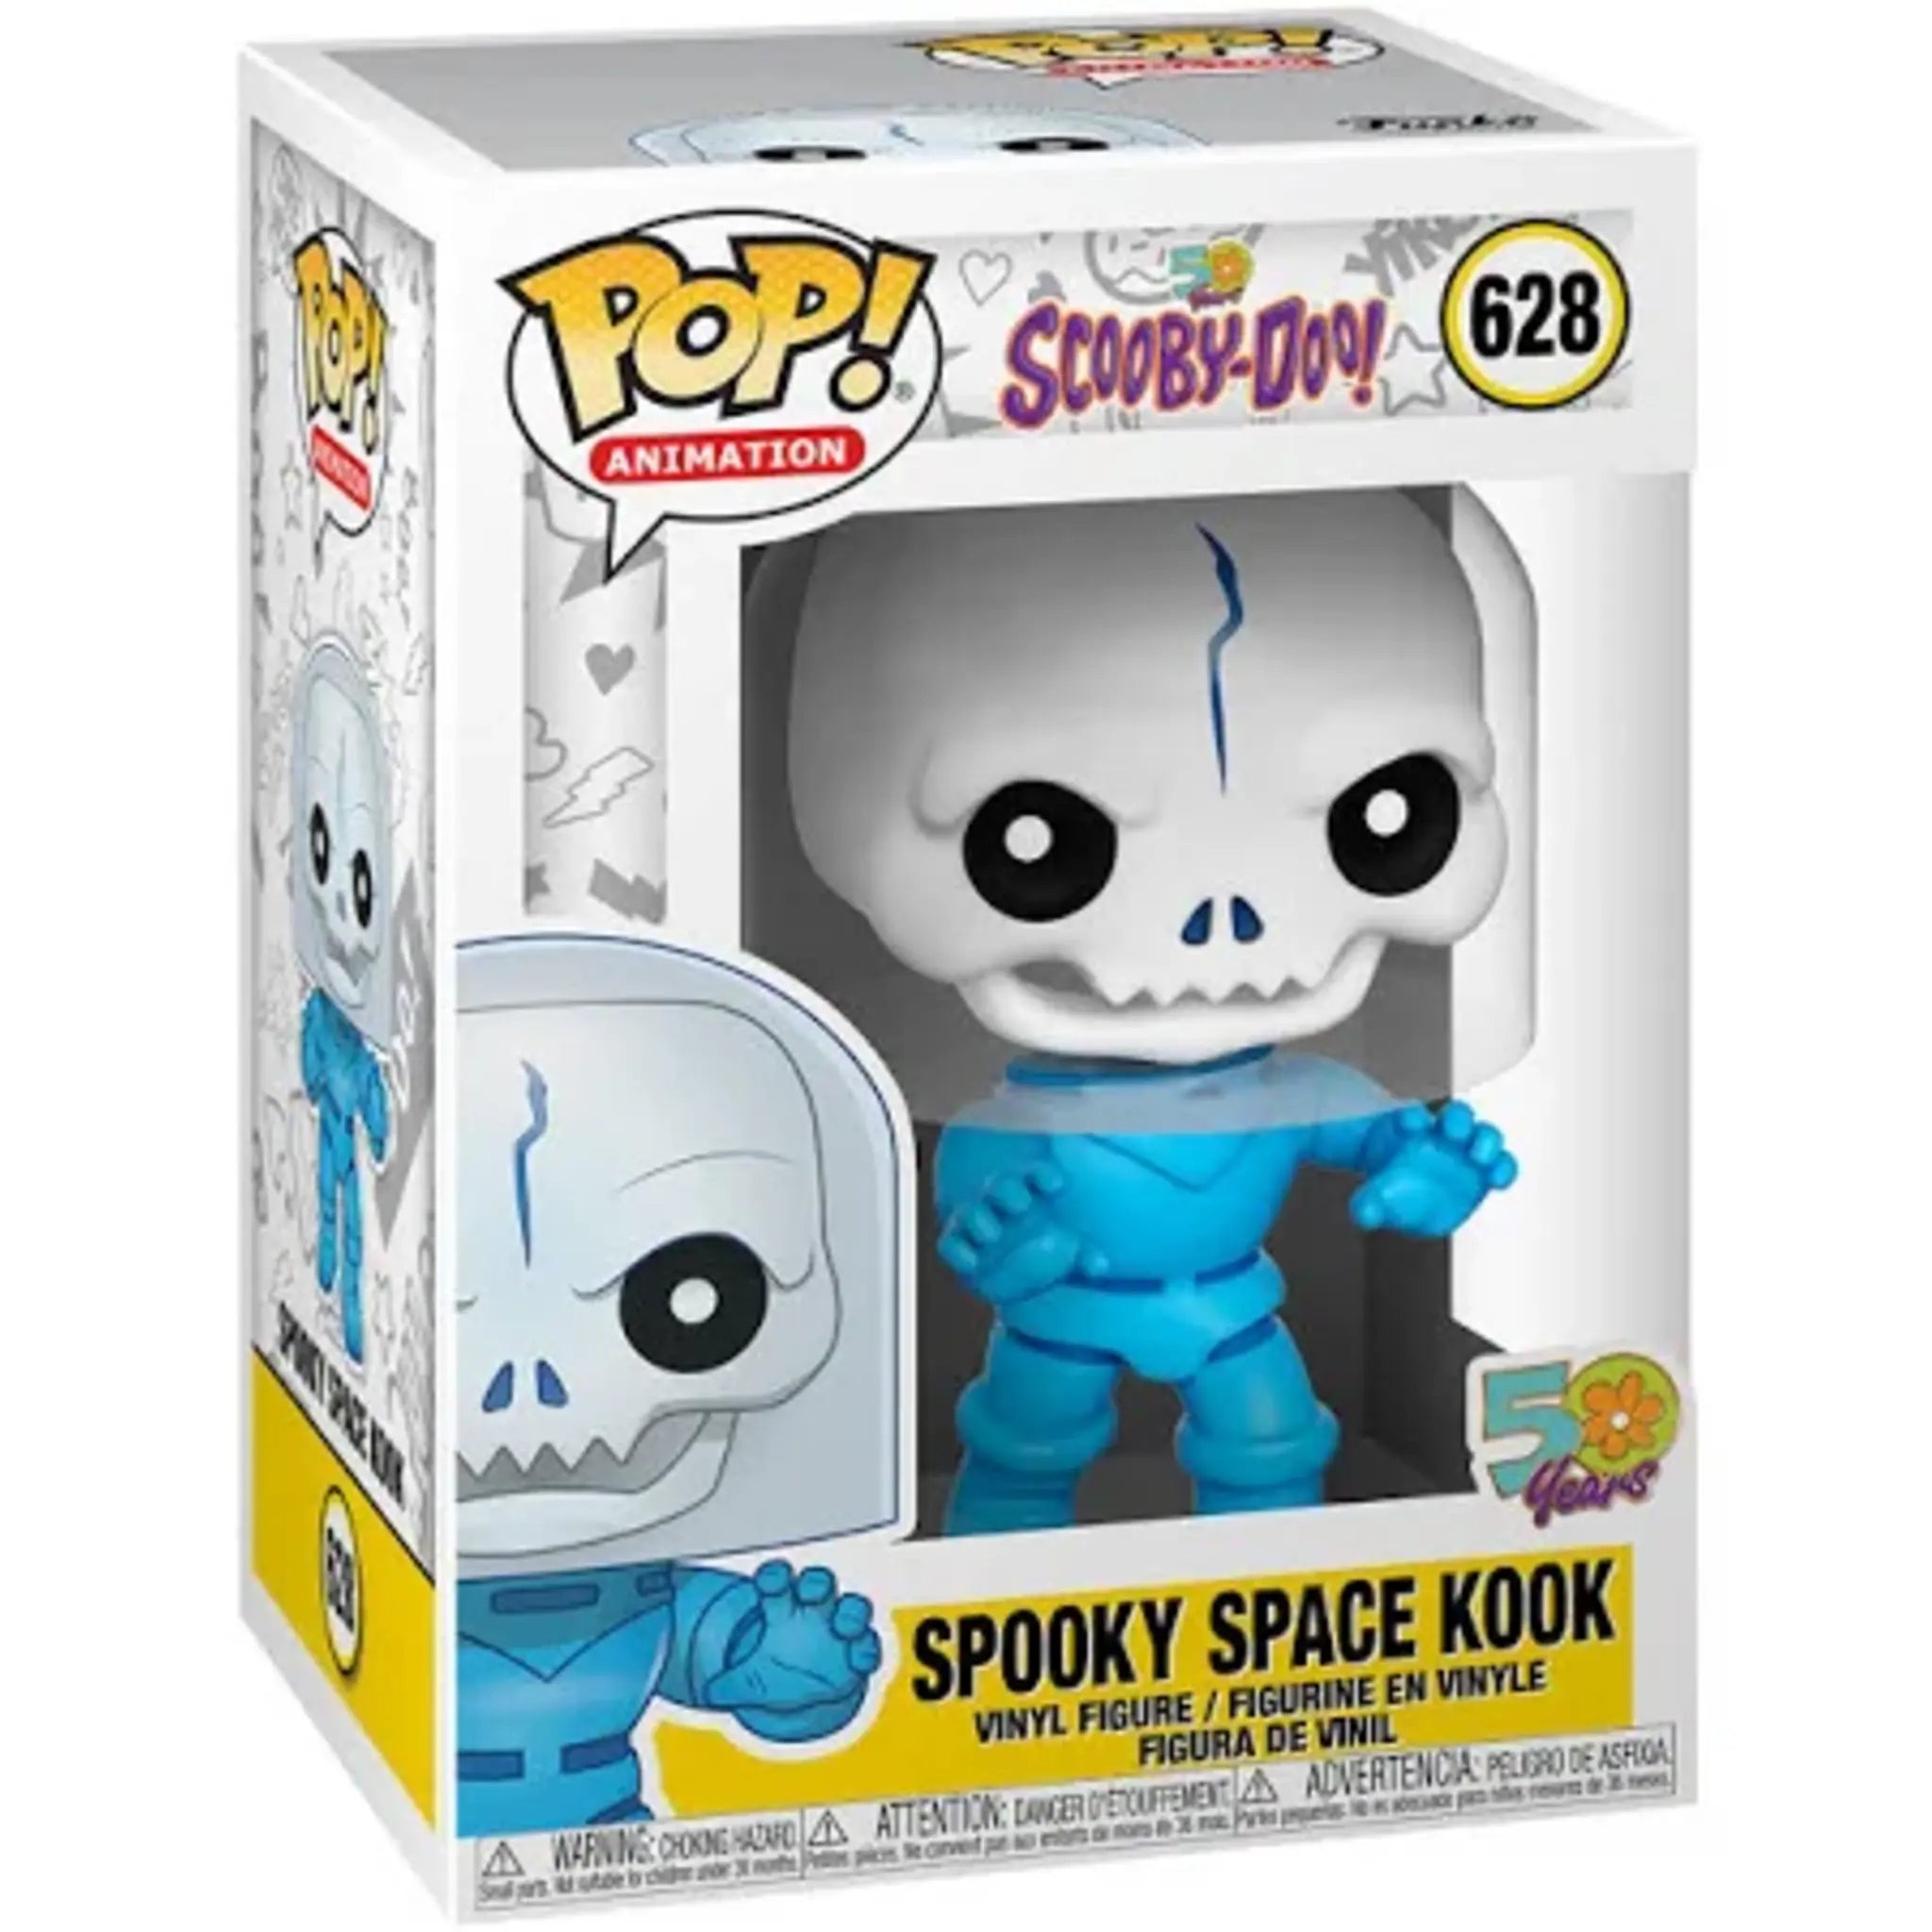 Spooky Space Kook Funko Pop!